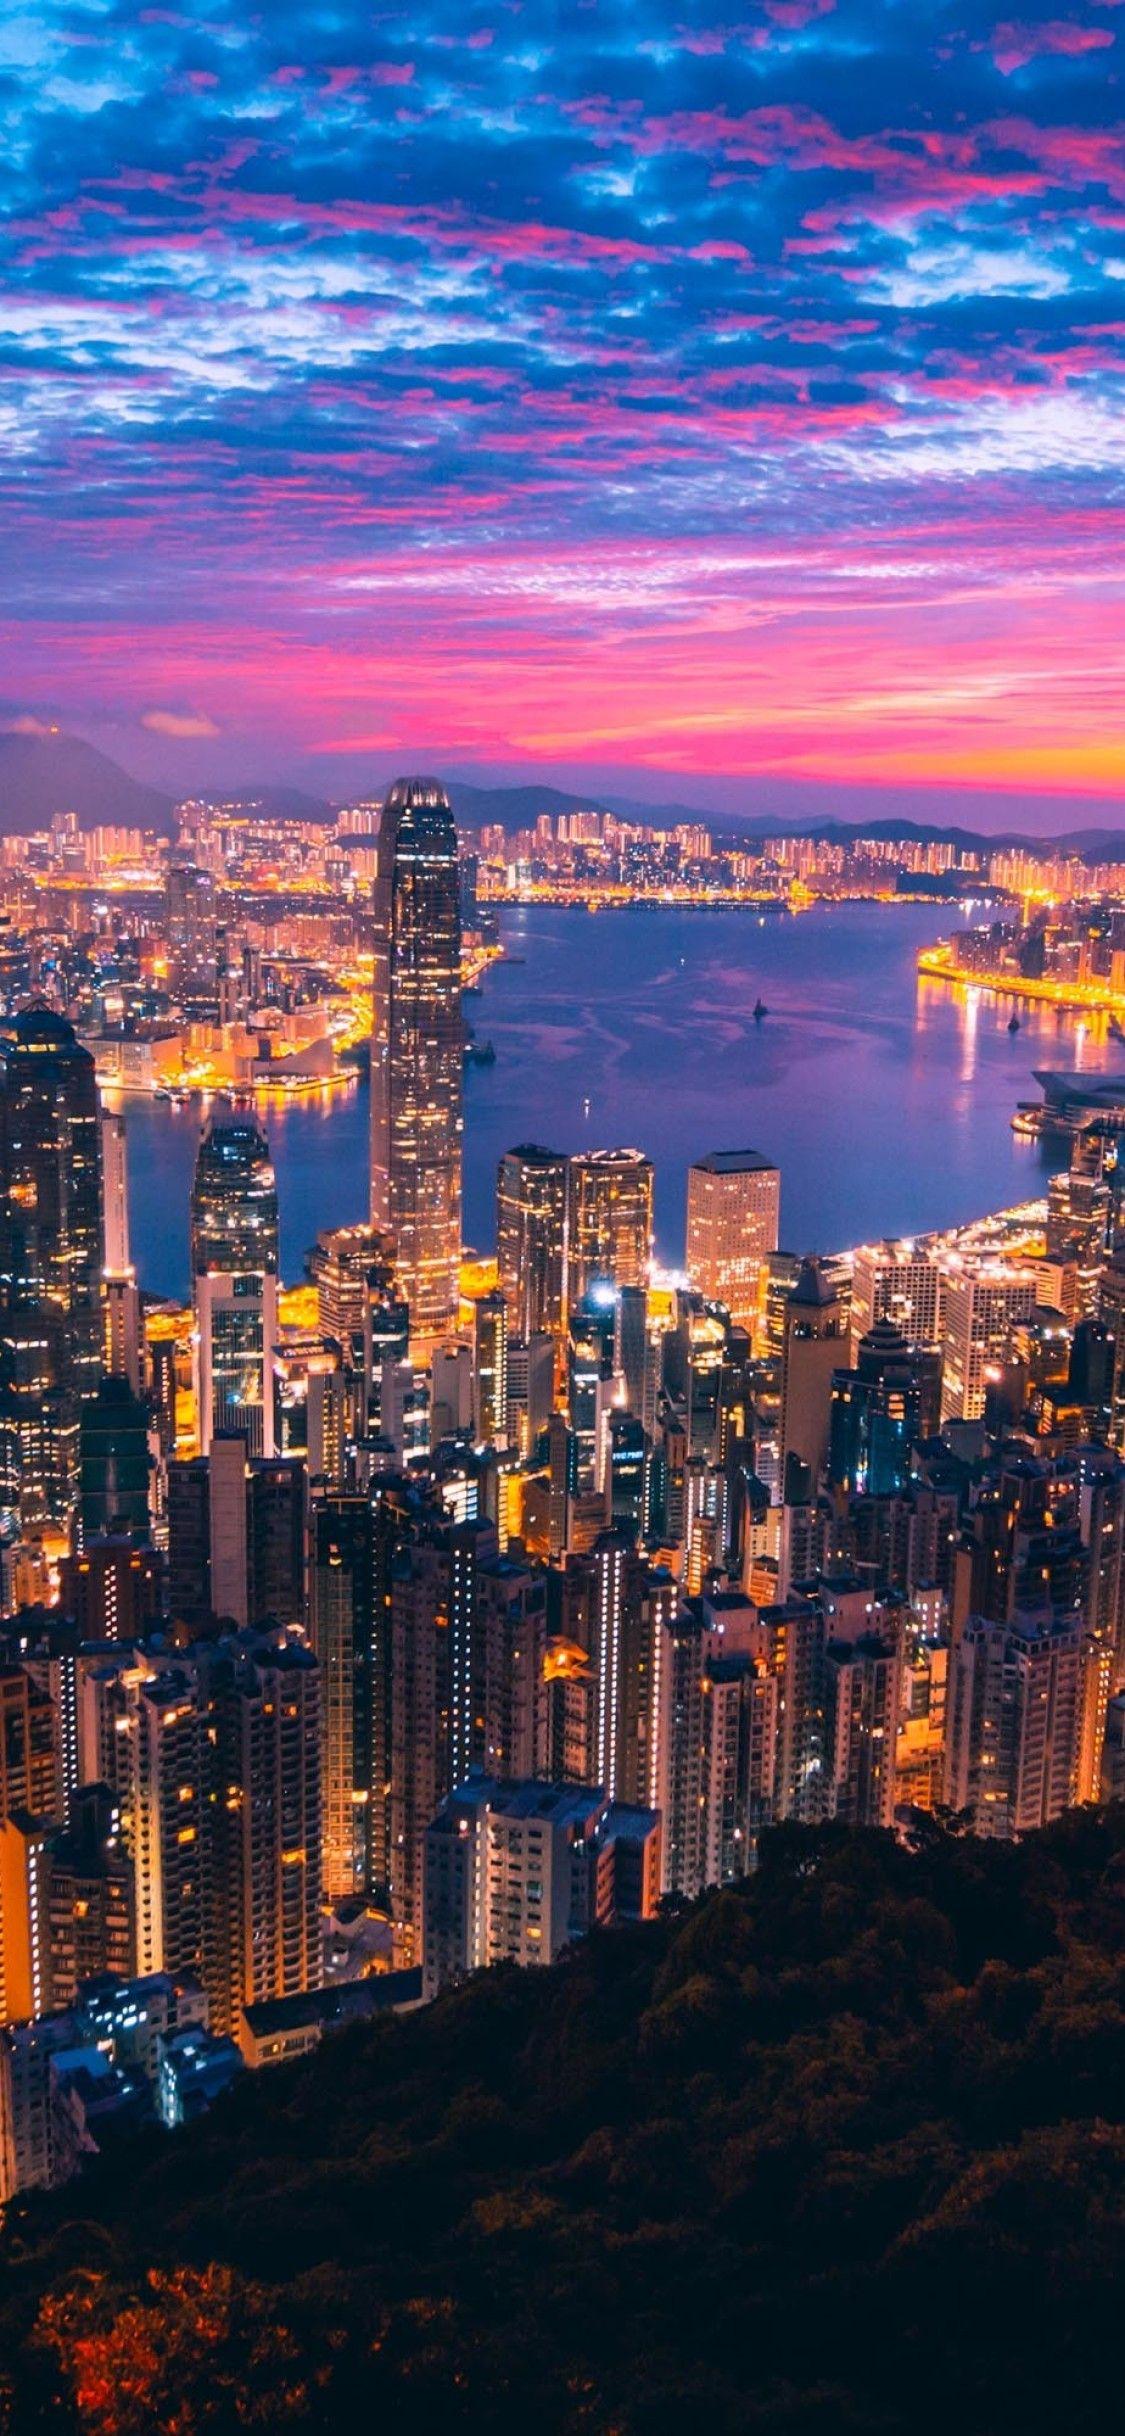 Với hình nền iPhone Hong Kong miễn phí, tận hưởng vẻ đẹp đặc trưng của Hong Kong trên điện thoại của bạn hoàn toàn miễn phí. Hình ảnh này sẽ đưa bạn đến những nơi đặc sắc nhất tại Hong Kong và mang lại sự sang trọng cho chiếc điện thoại của bạn. Đừng bỏ lỡ cơ hội tải xuống những bức ảnh độc đáo này!